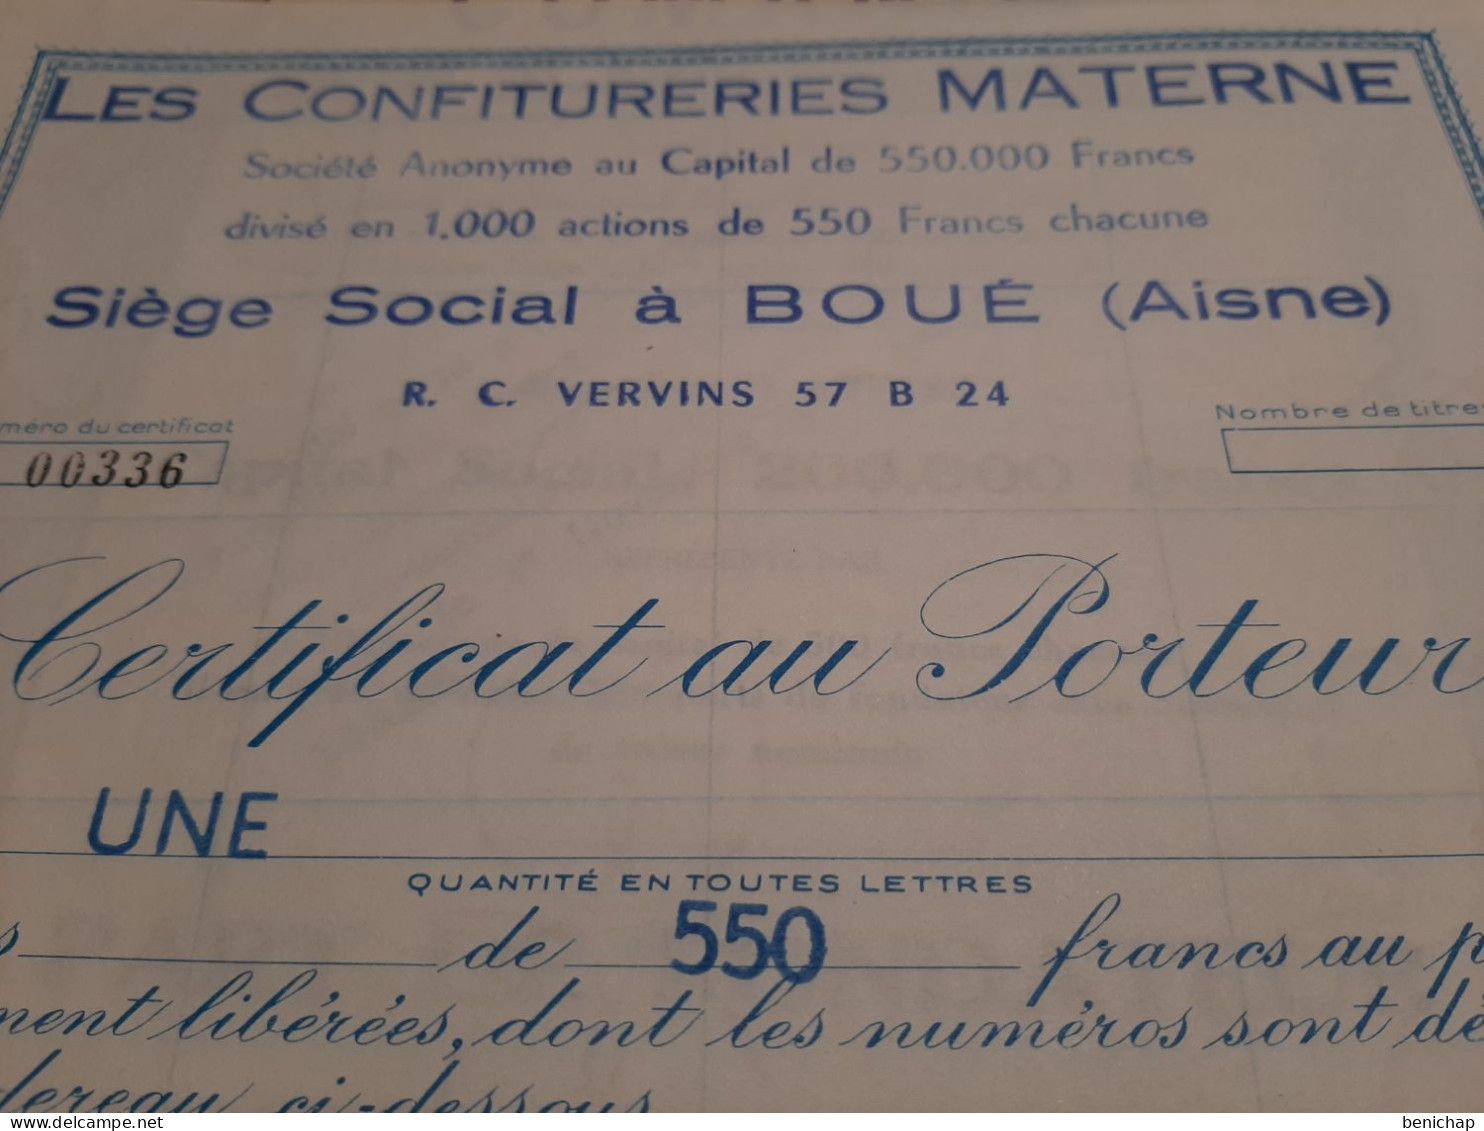 Les Confitureries Materne - Certificat Au Porteur De 1 Action De 550 Frs - Aisne - Boué - 1 Octobre 1966. - Landbouw